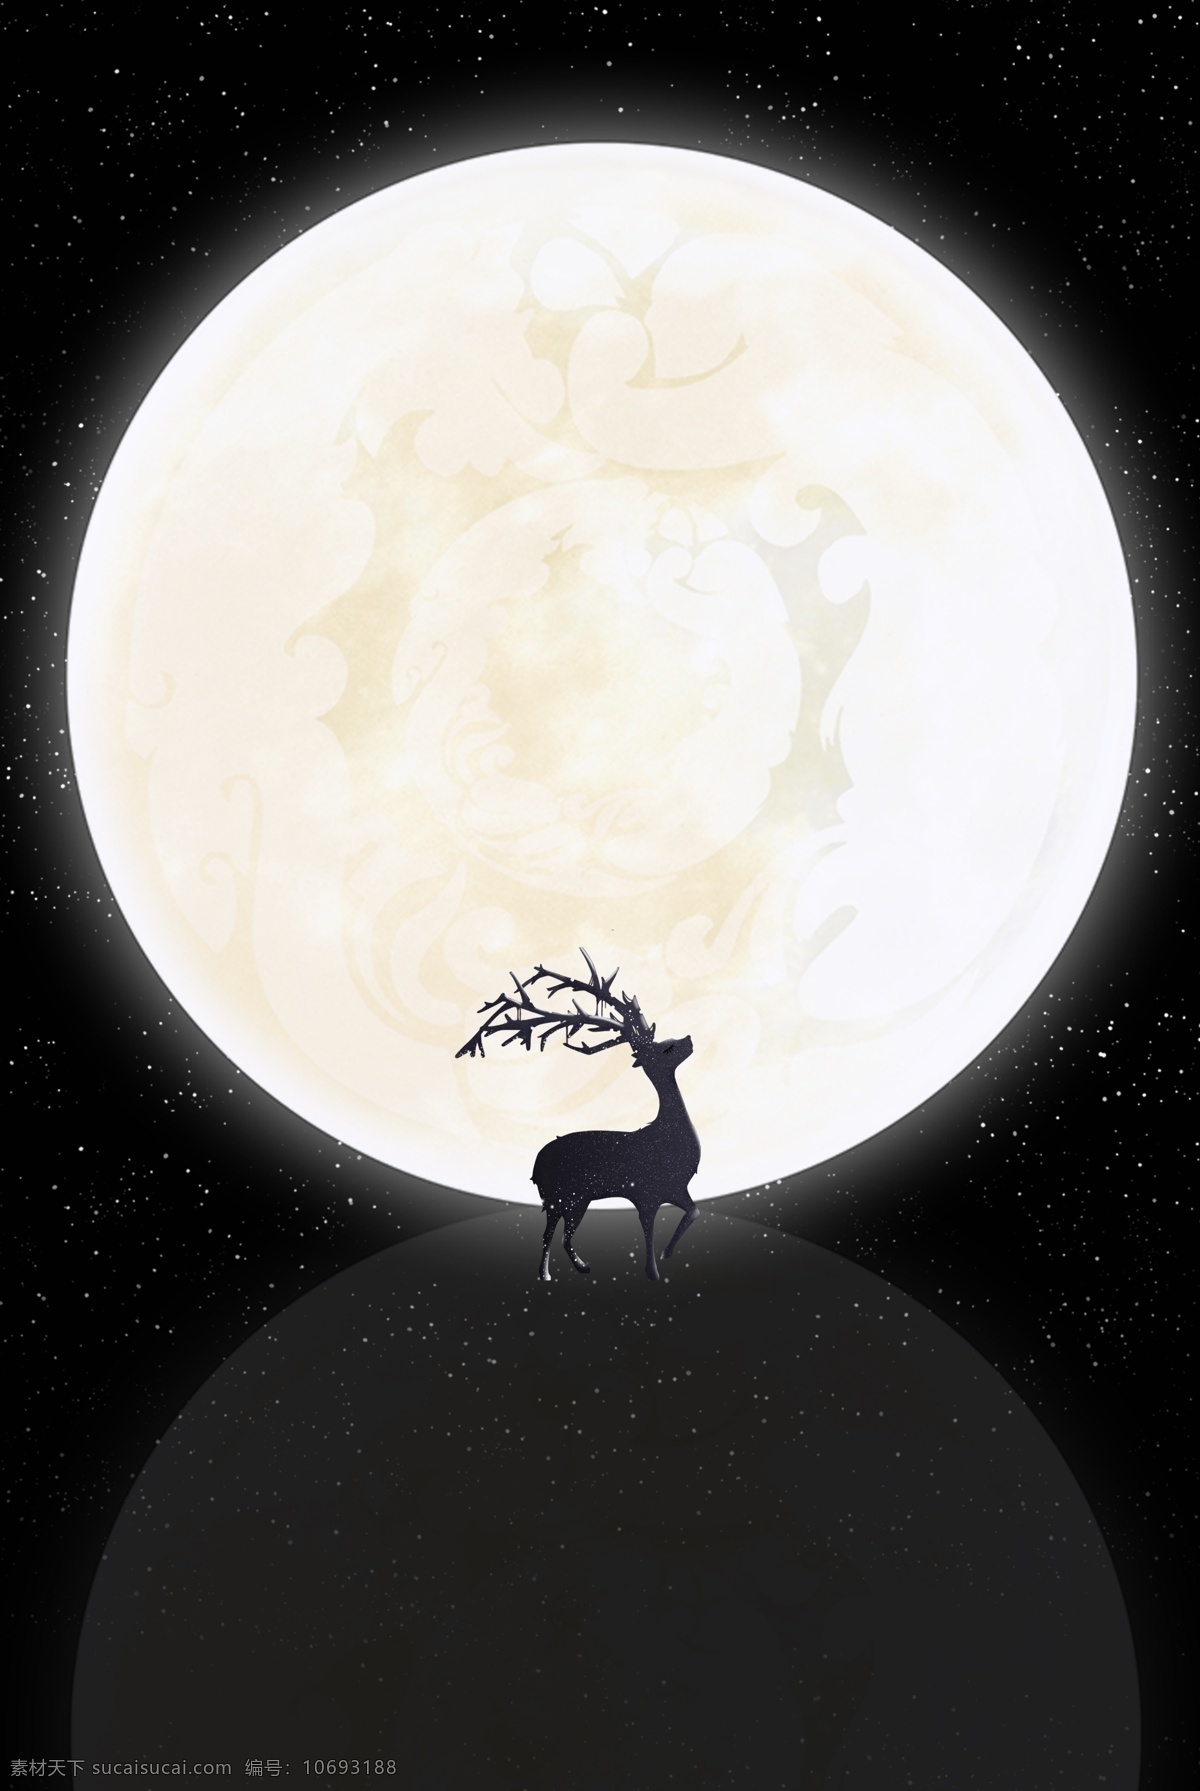 晚安 问候 月亮 麋鹿 唯美 背景 文艺 质感 剪影